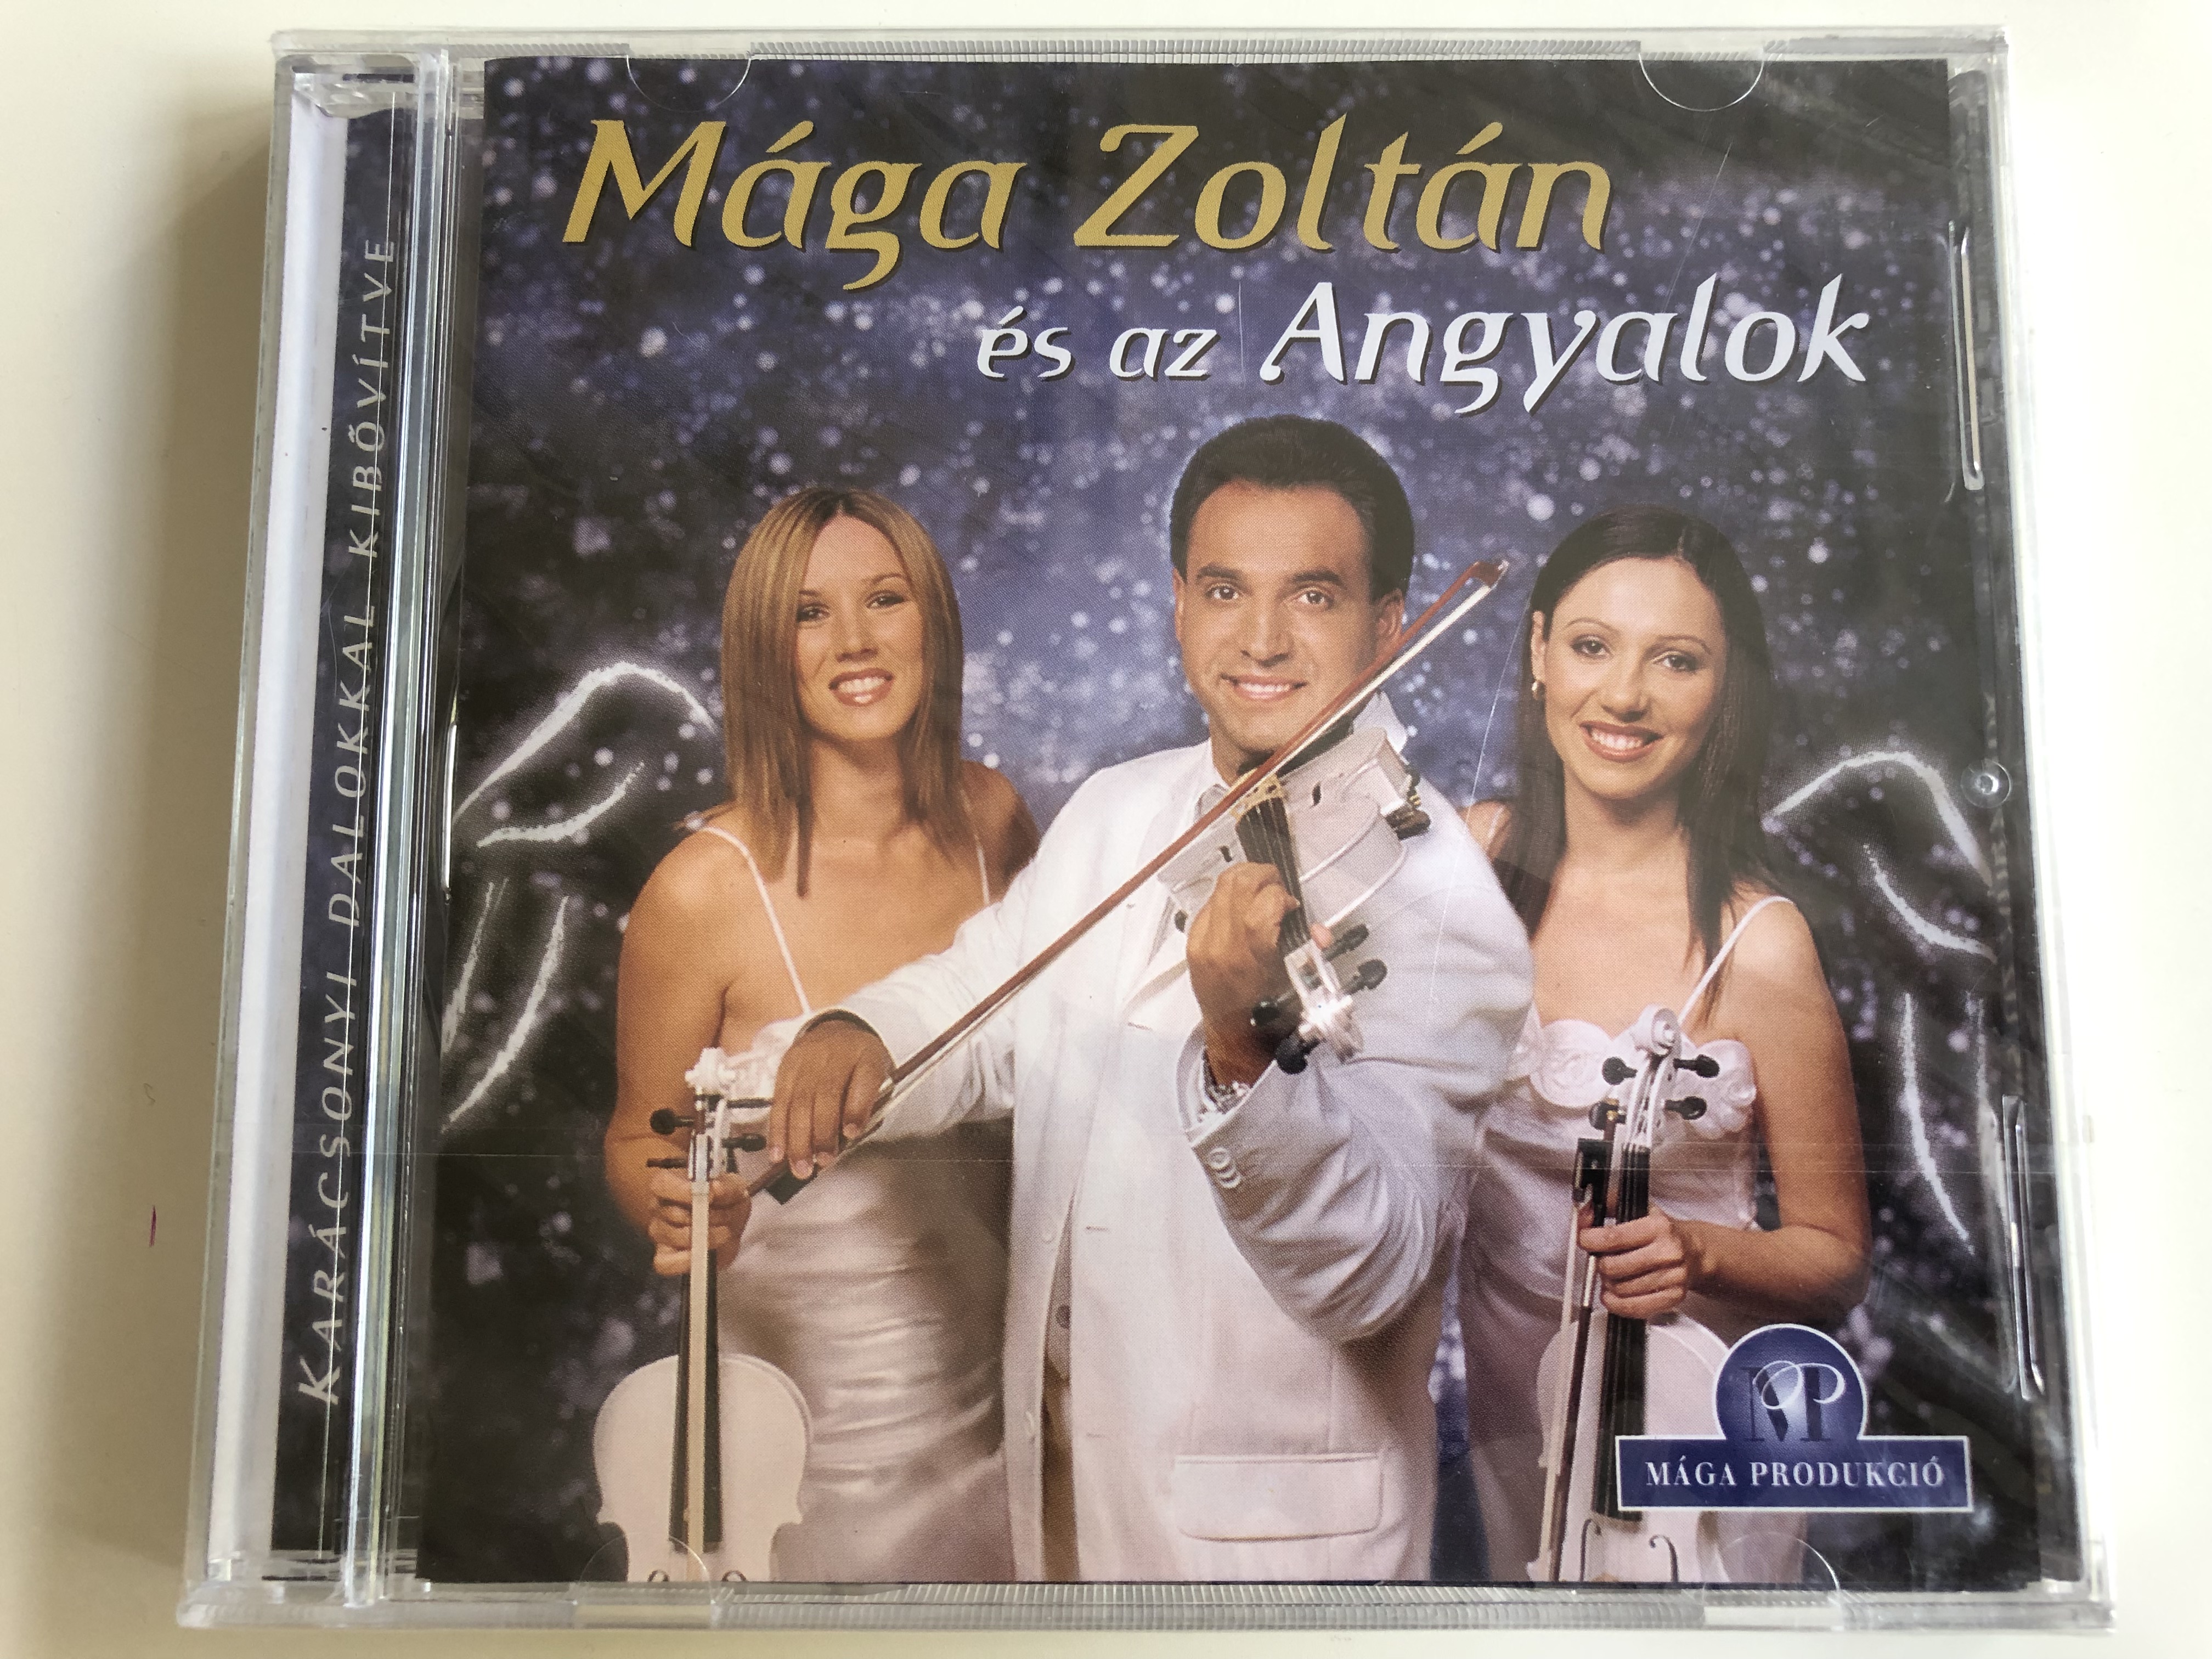 m-ga-zolt-n-s-az-angyalok-kar-csonyi-dalokkal-kib-v-tve-audio-cd-2007-1-.jpg